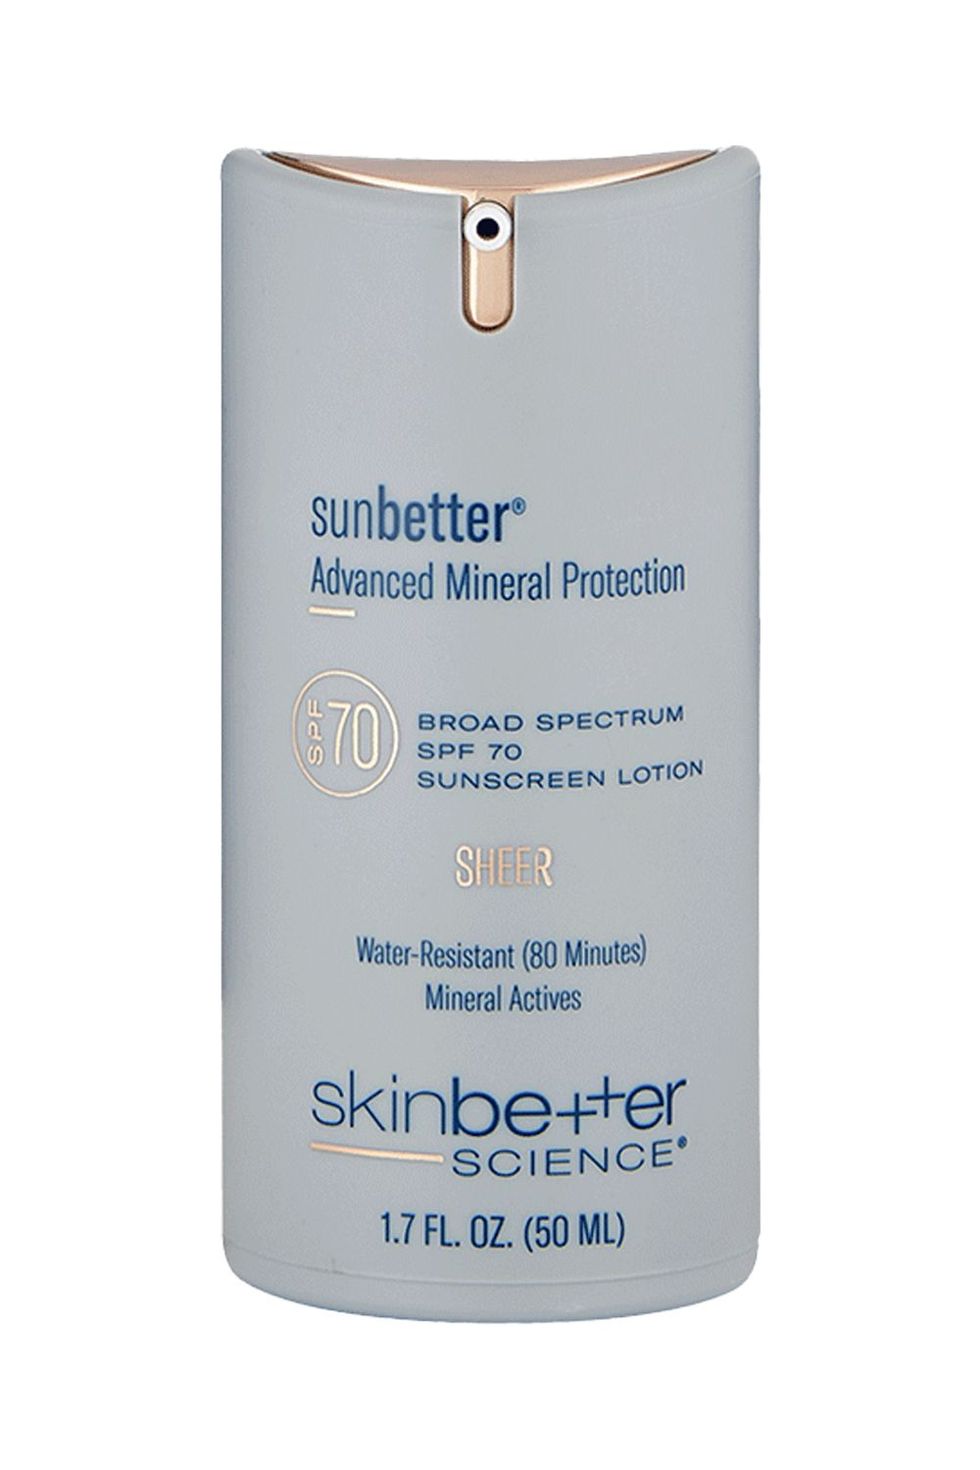 Skinbetter Sunbetter Sheer SPF 70 Sunscreen Lotion 